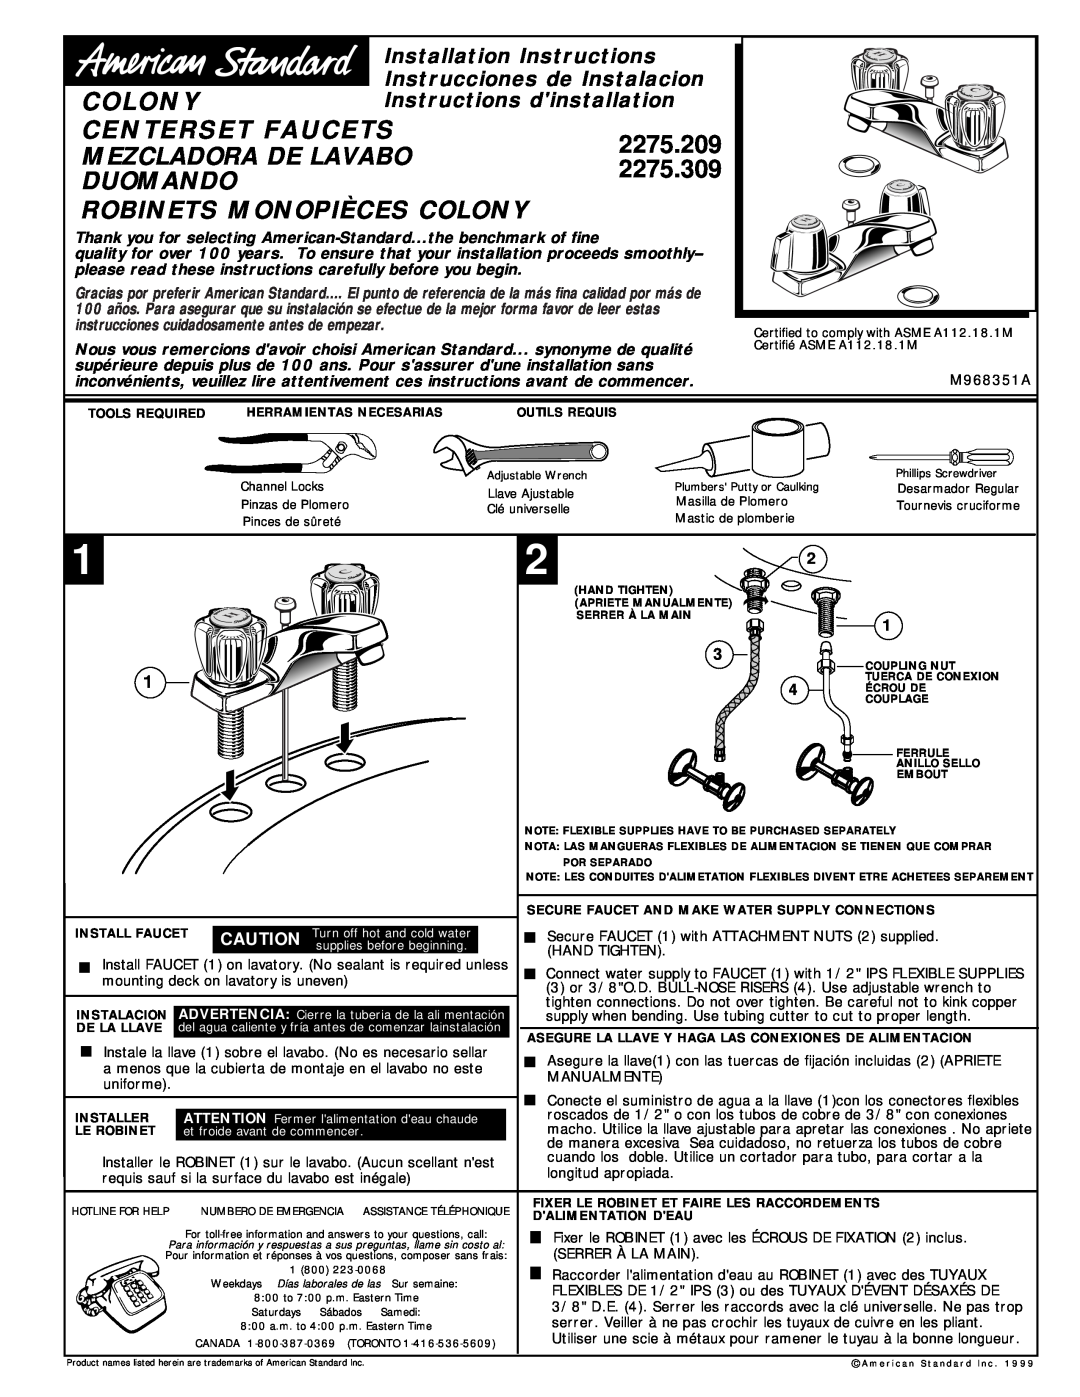 American Standard 2275.209 installation instructions Colony, Centerset Faucets, Mezcladora De Lavabo, 2275.309, Duomando 